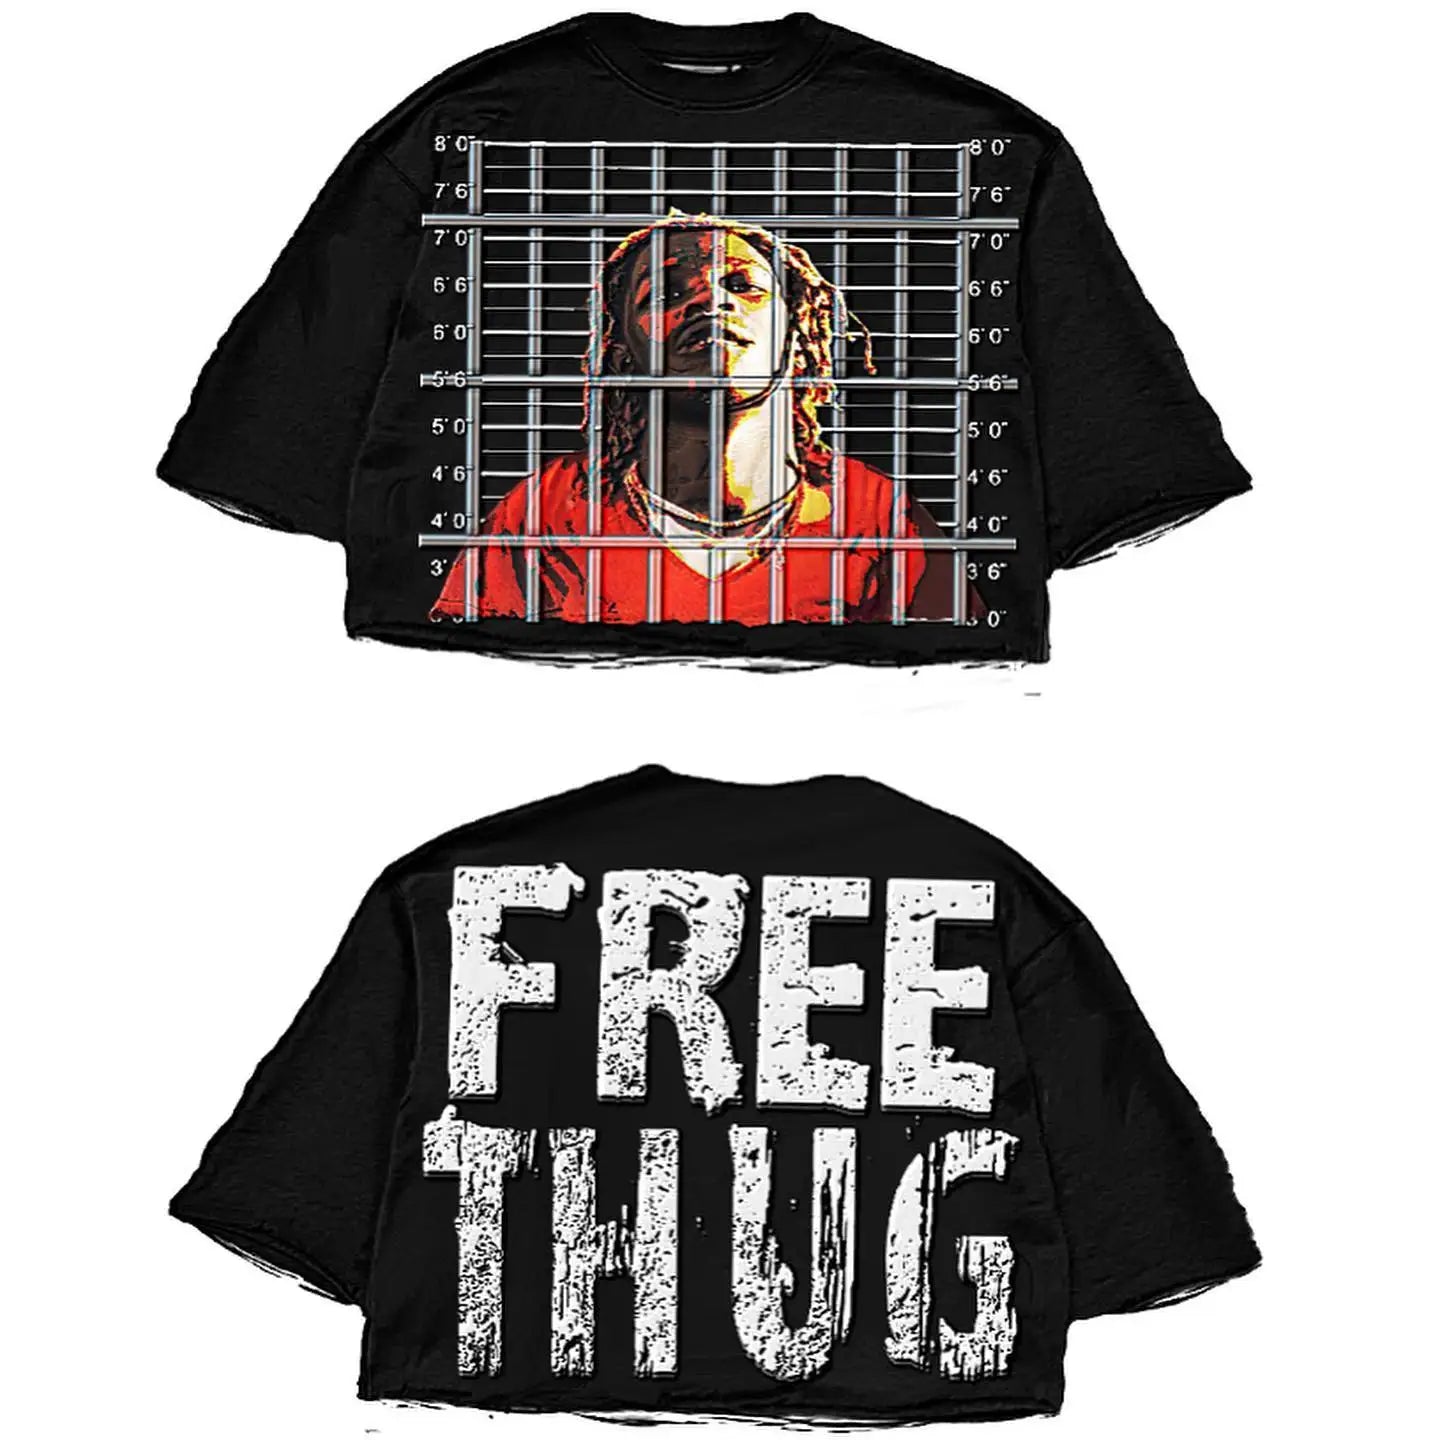 Men in oversized, stylish hip hop shirts." Free Thug